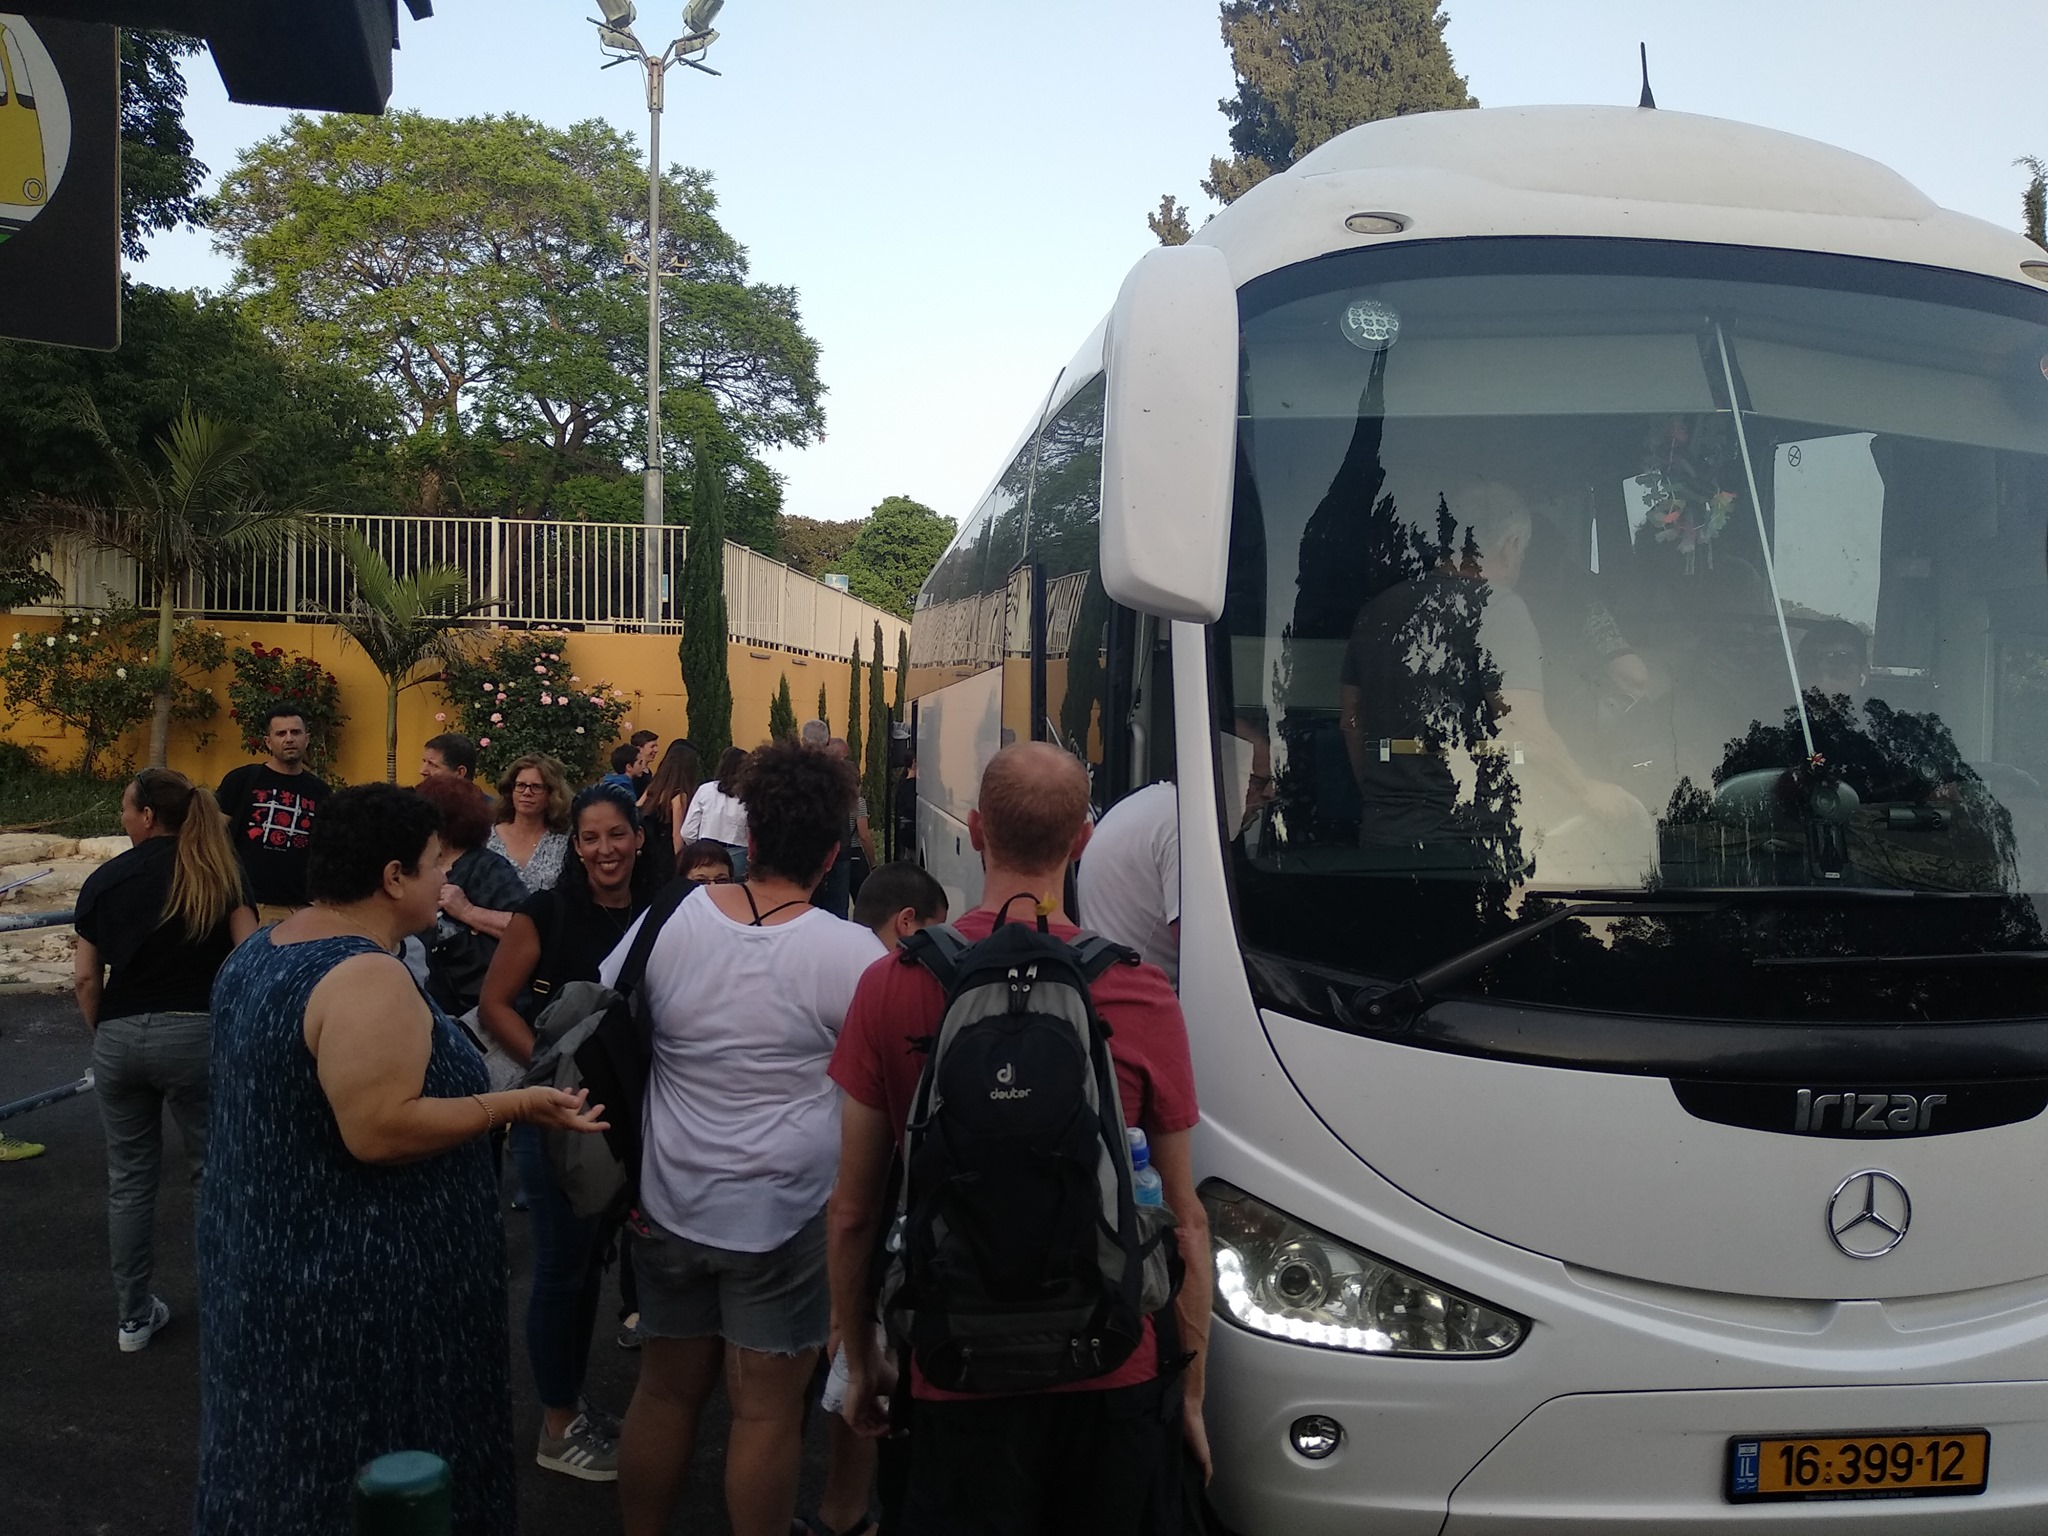 בתמונה: שיתוף פעולה בין חברי גבעת חיים איחוד ומאוחד שמילאו שני אוטובוסים להפגנה בשבת 